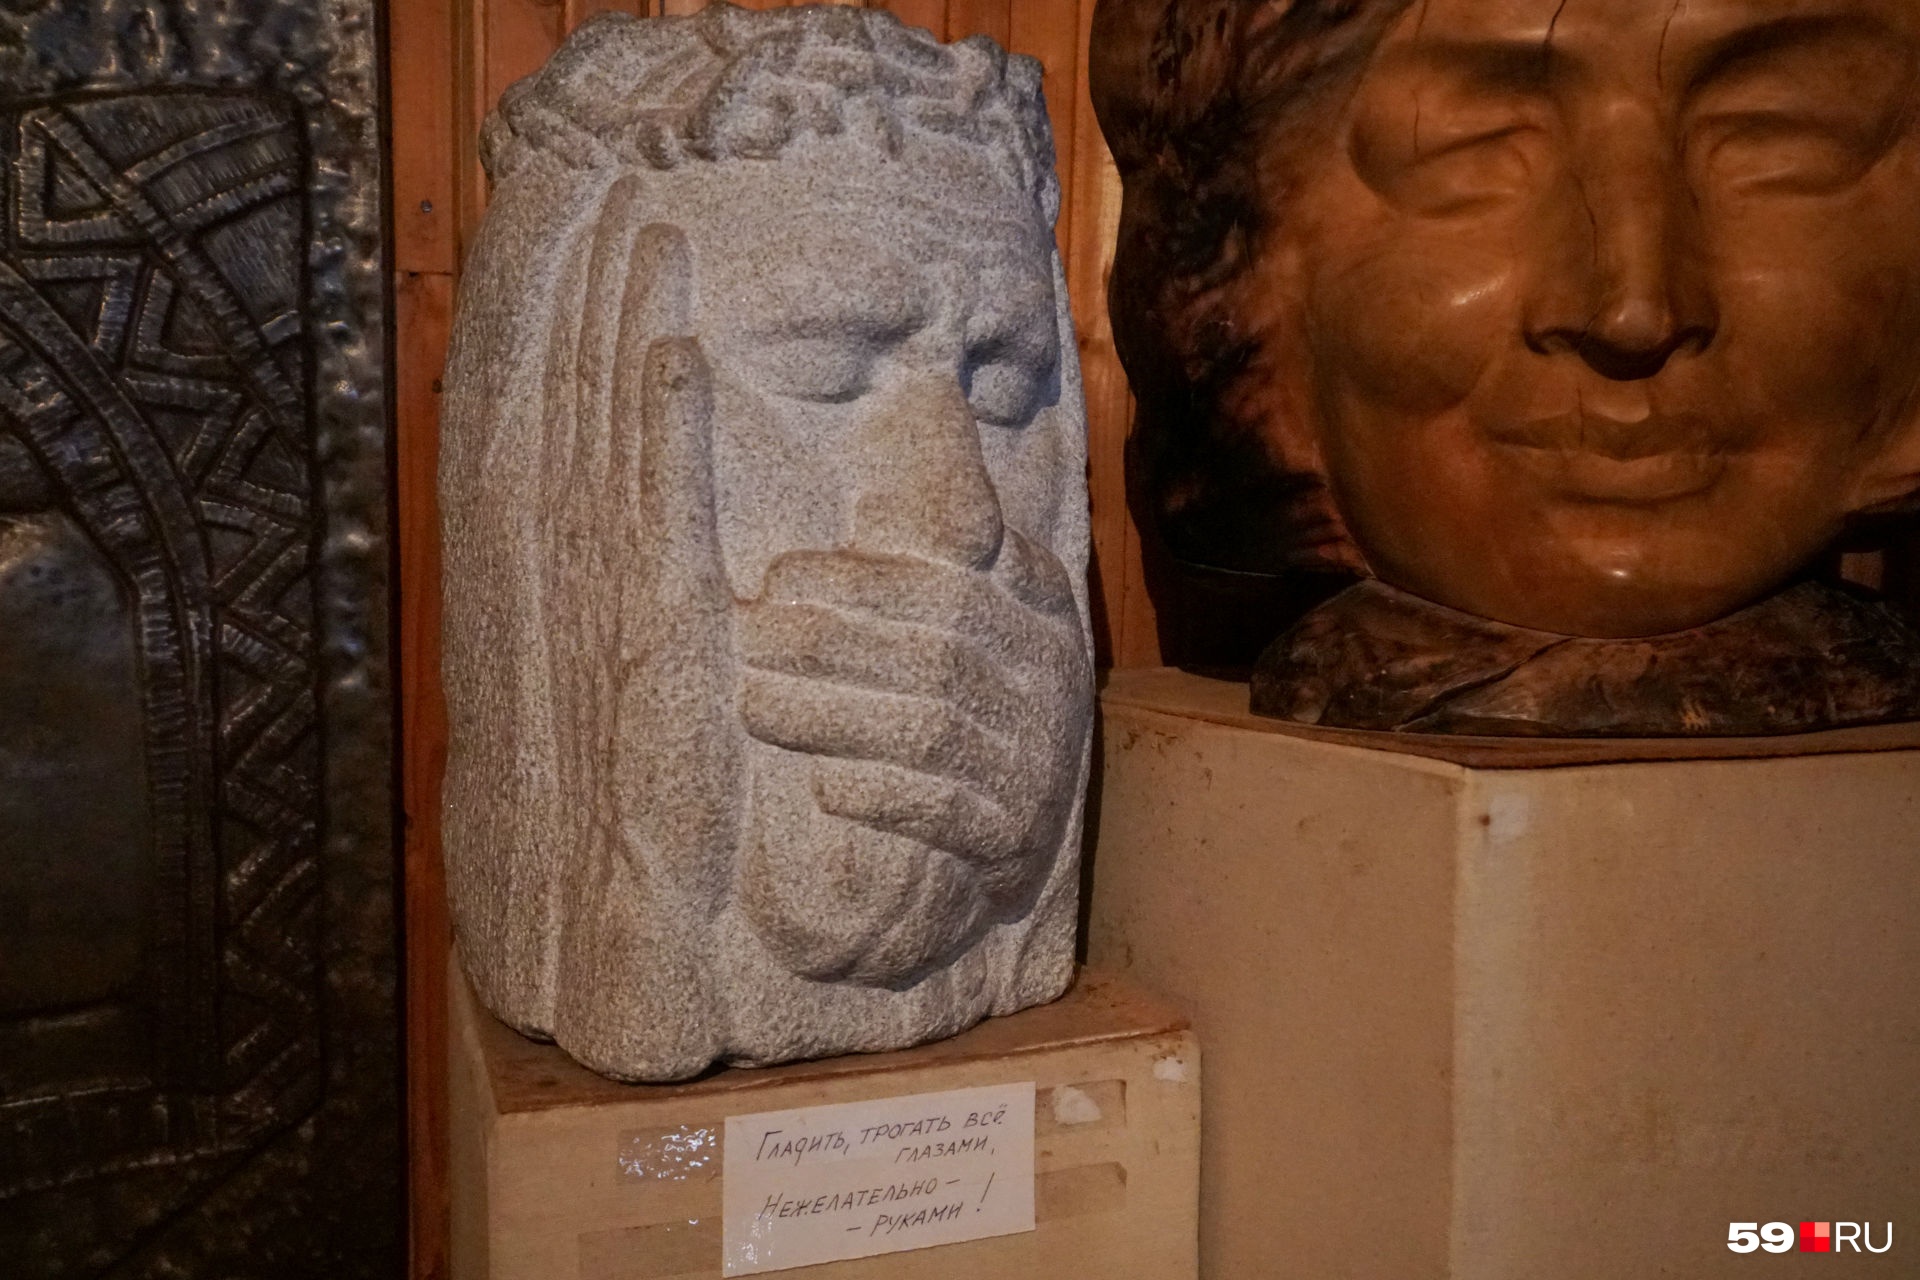 Диалог. Узнаёте в этом образе Сидящего Спасителя из пермской деревянной скульптуры? Но у Собакина он другой. Его состояние молчания подчёркнуто ещё и жестом левой руки 